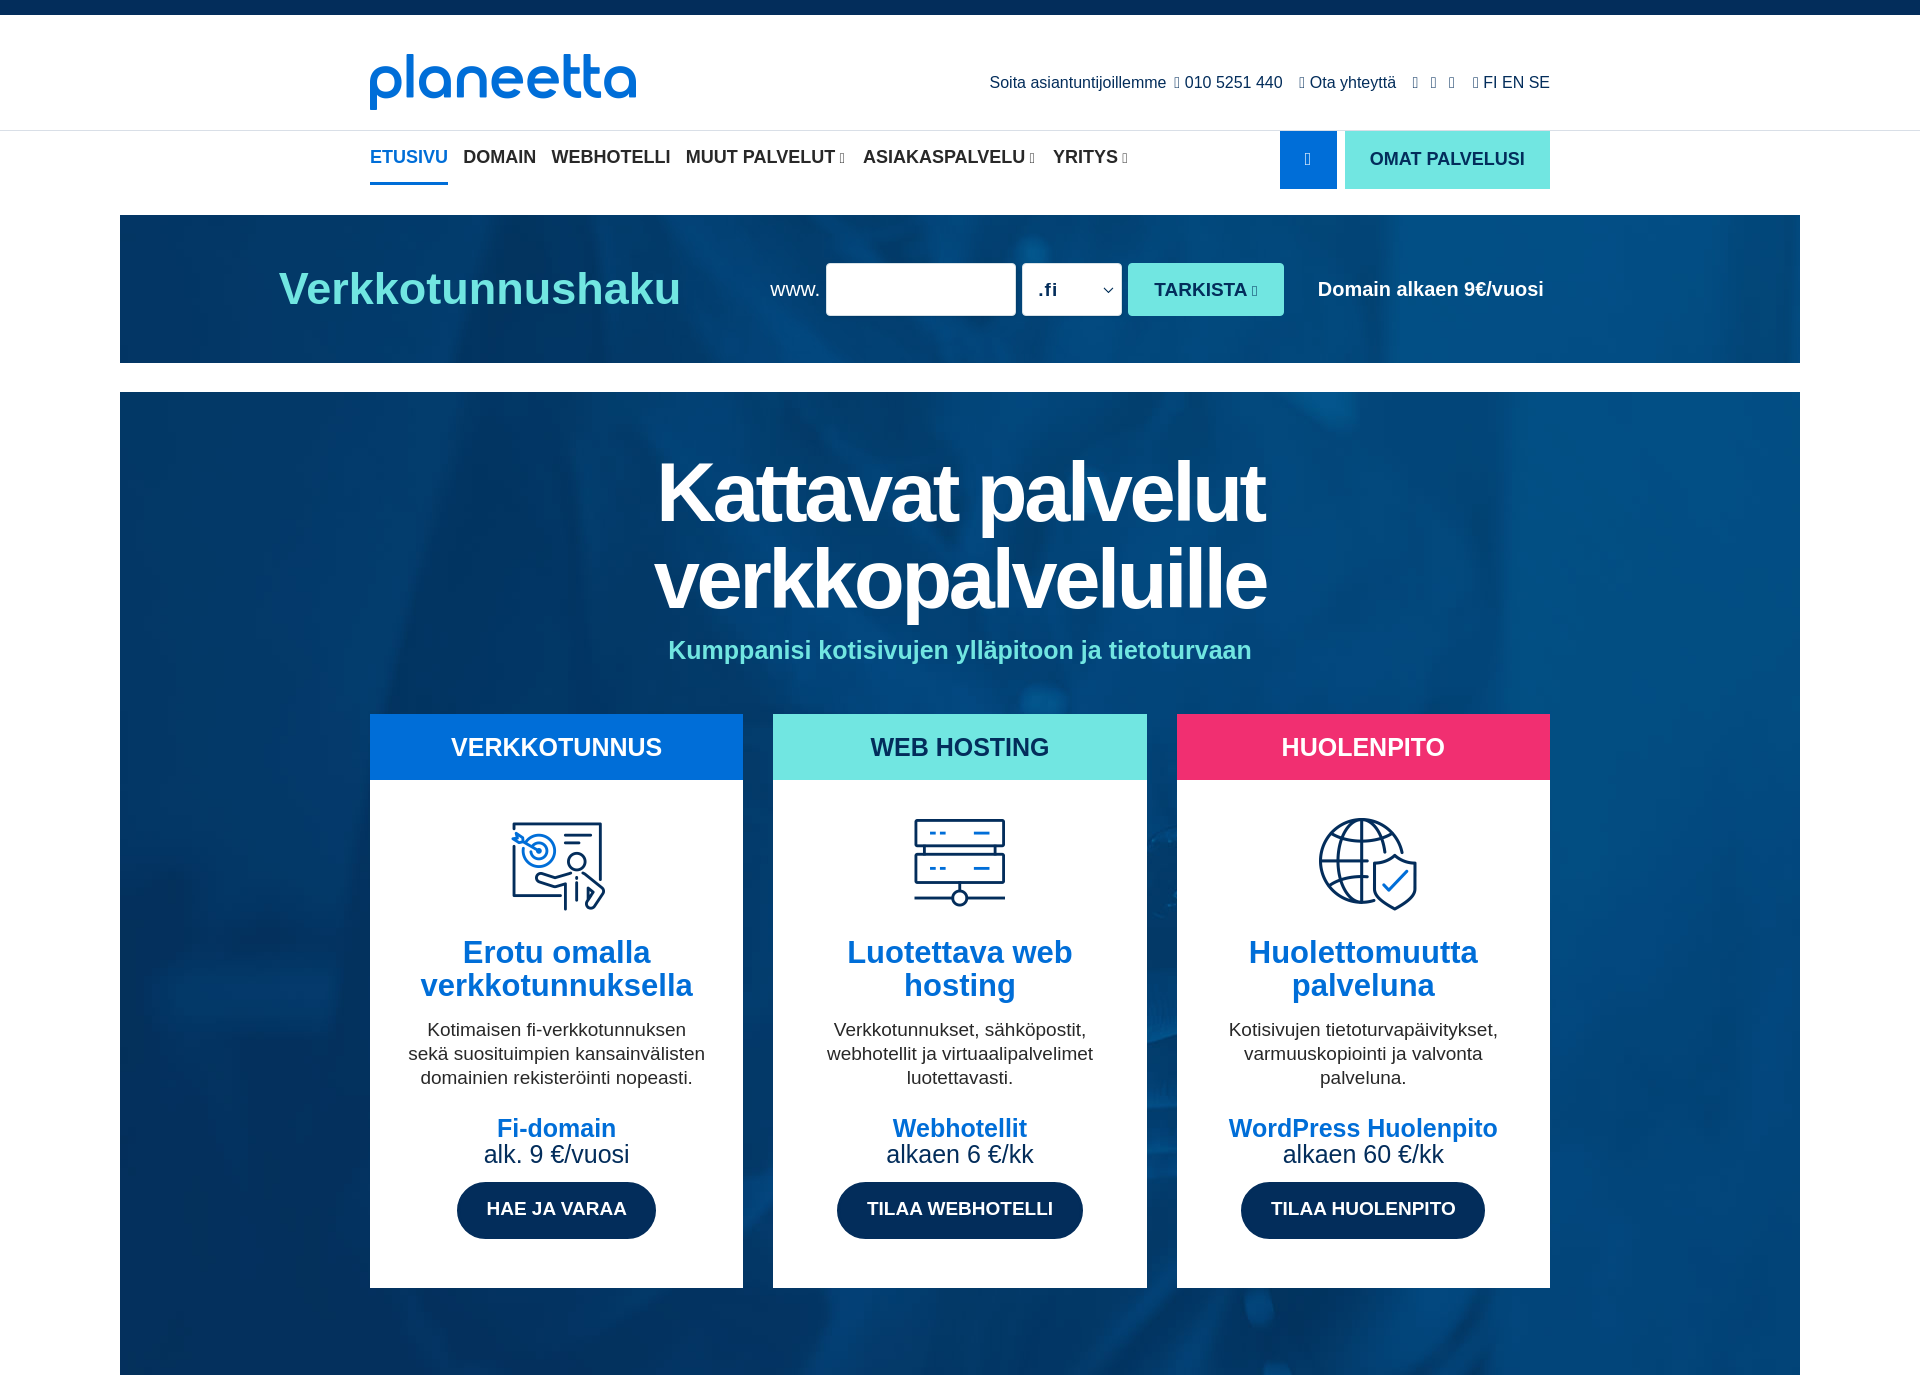 Skärmdump för valoliving.fi